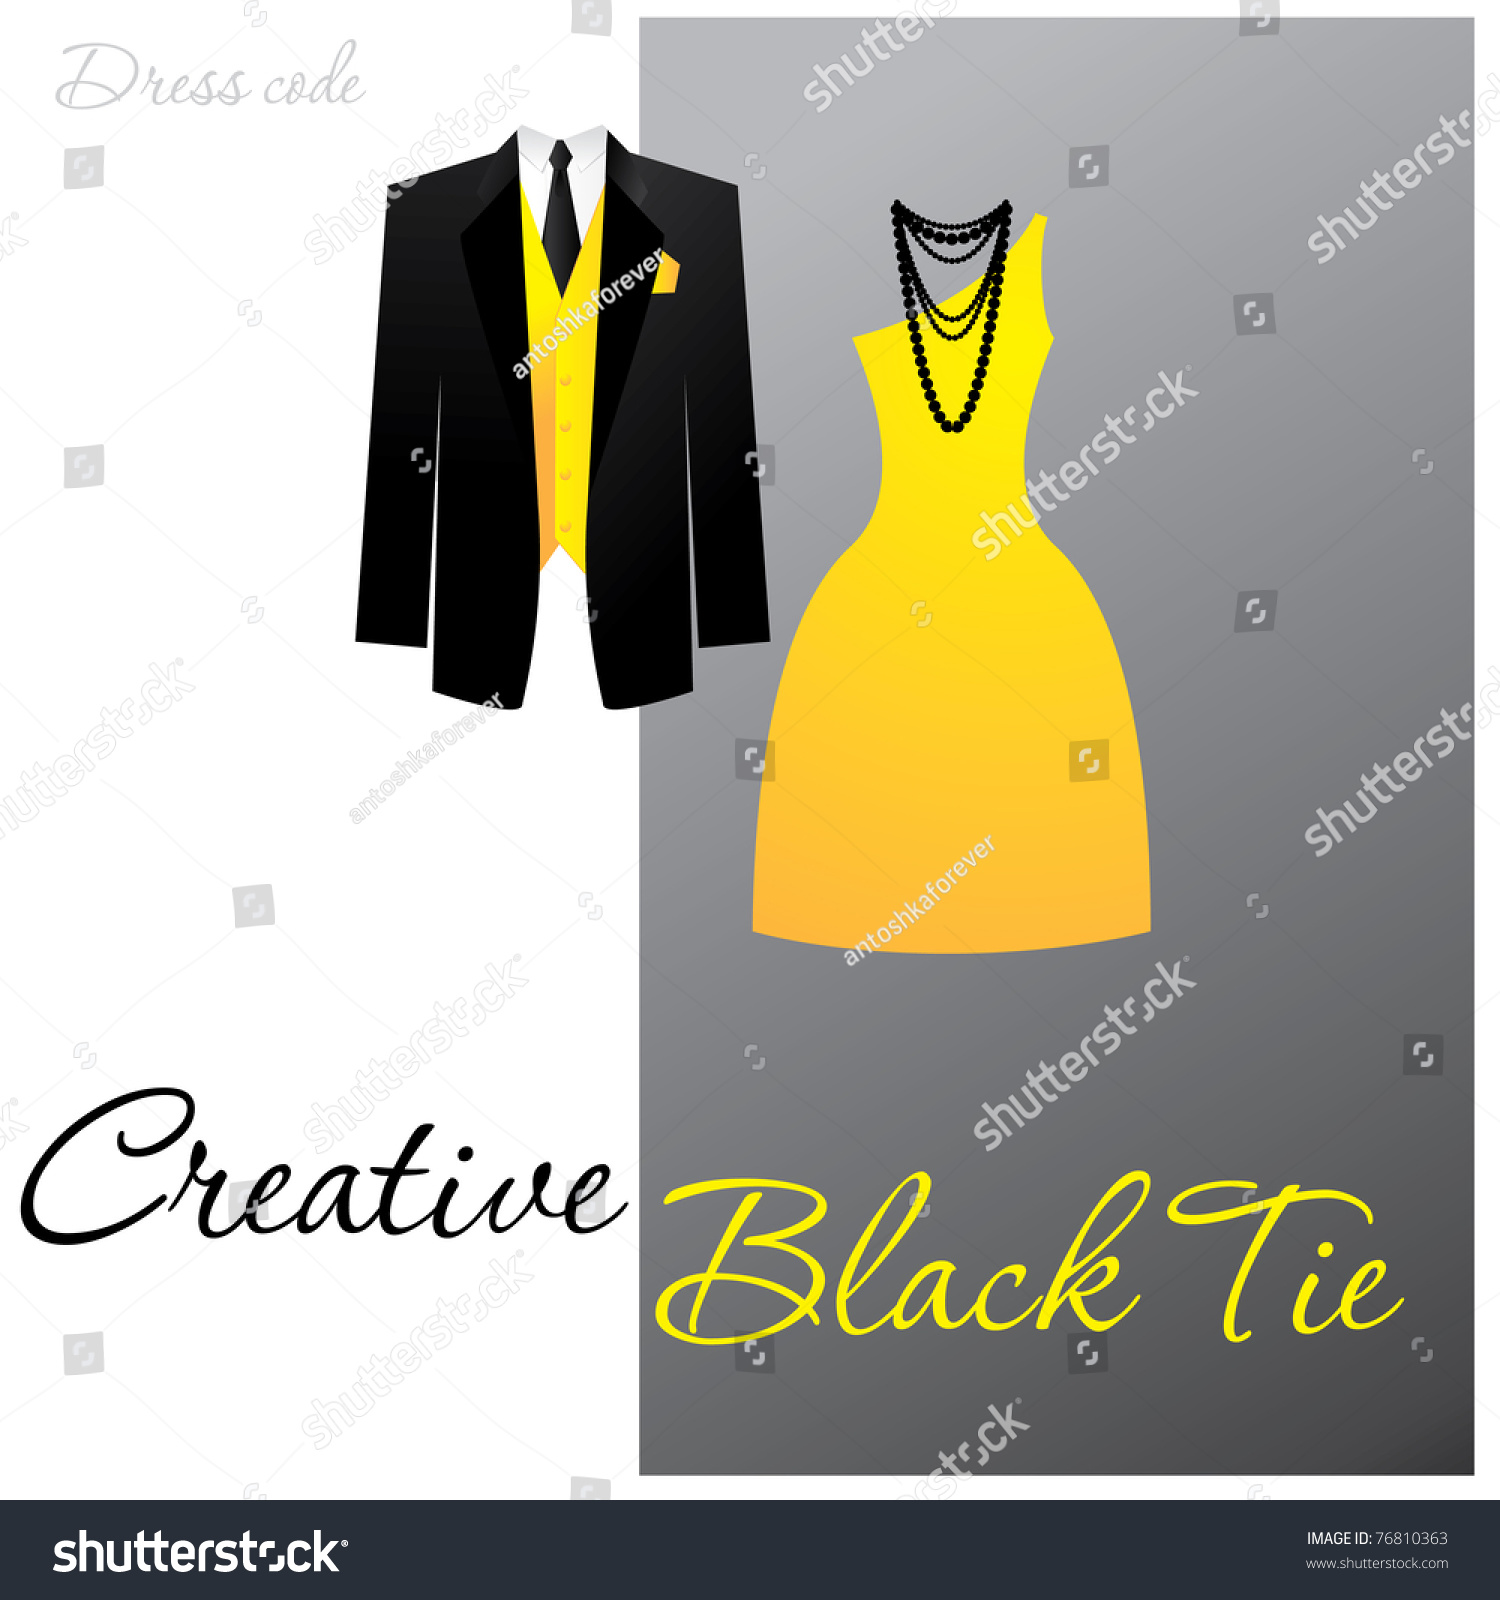 creative black tie attire